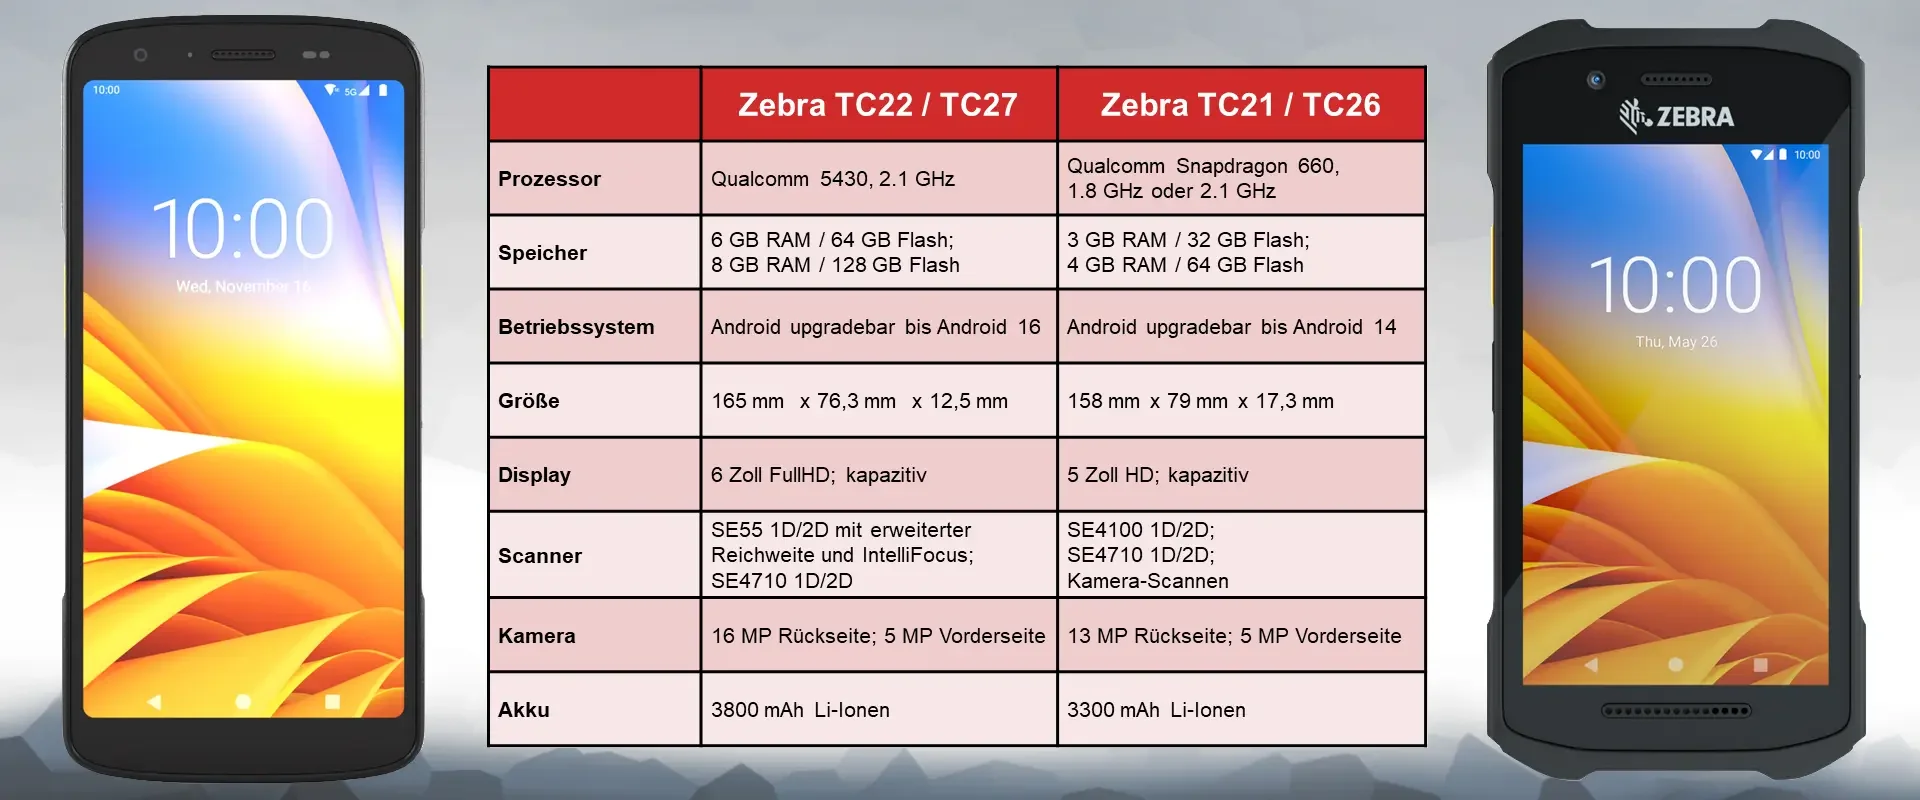 Zebra TC22 / TC27: Vergleich mit dem Zebra TC21 / TC26